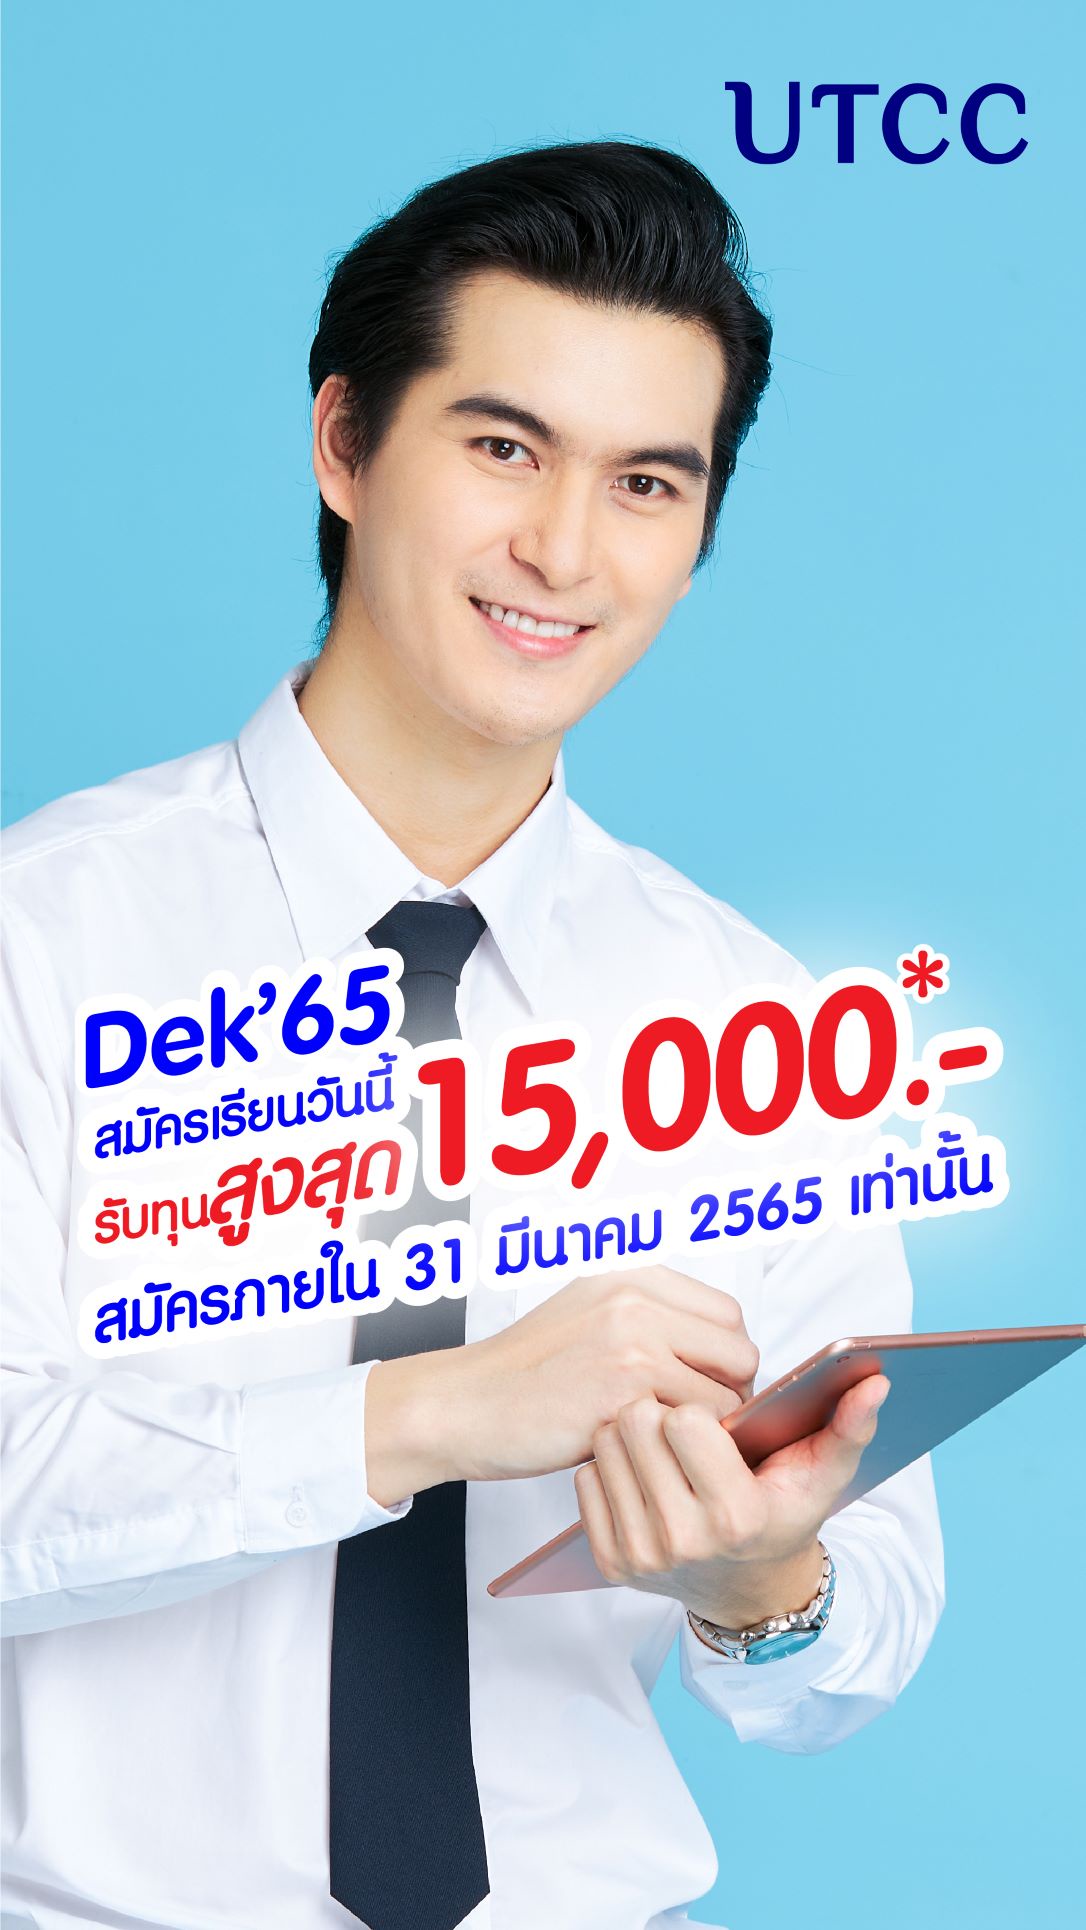 มาทำตามความฝัน Follow Your Dreams ที่ ม.หอการค้าไทย มอบทุน Start Up ส่วนลดค่าเล่าเรียน มูลค่ารวม 15,000 บาท